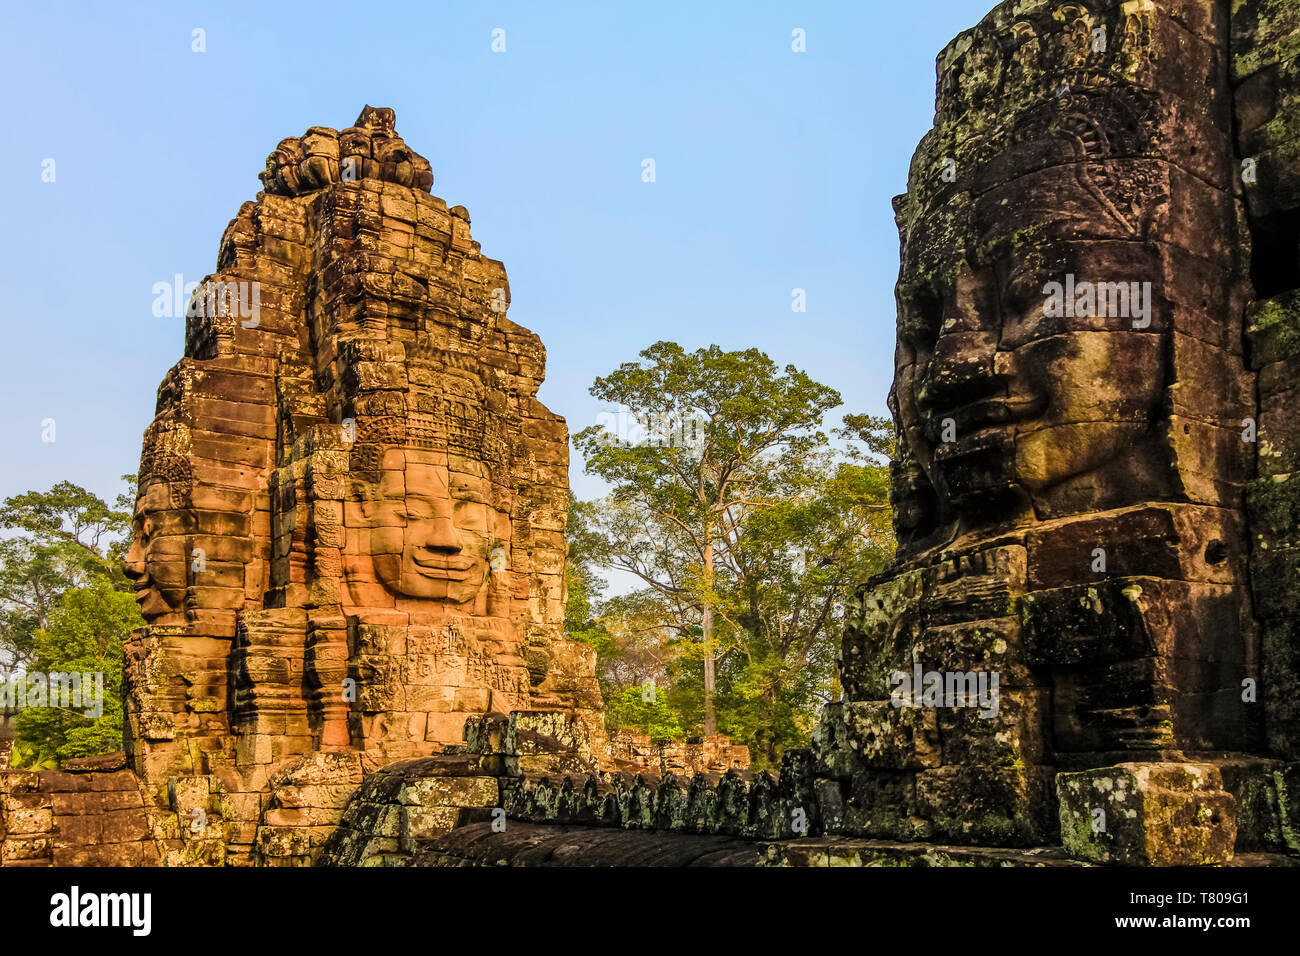 Türme und drei der 216 lächelnden Gesichtern aus Sandstein im 12. Jahrhundert Bayon Tempel in Angkor Thom ummauerten Stadt, Angkor, UNESCO, Siem Reap, Kambodscha, Asien Stockfoto